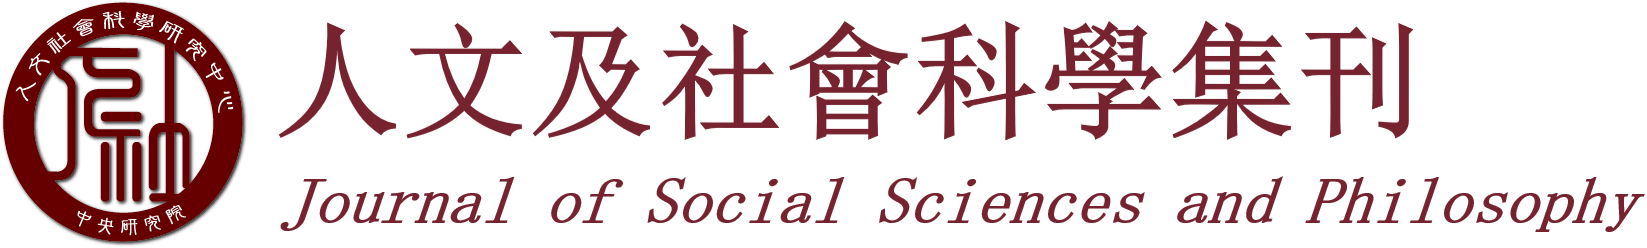 logo-人文及社會科學集刊